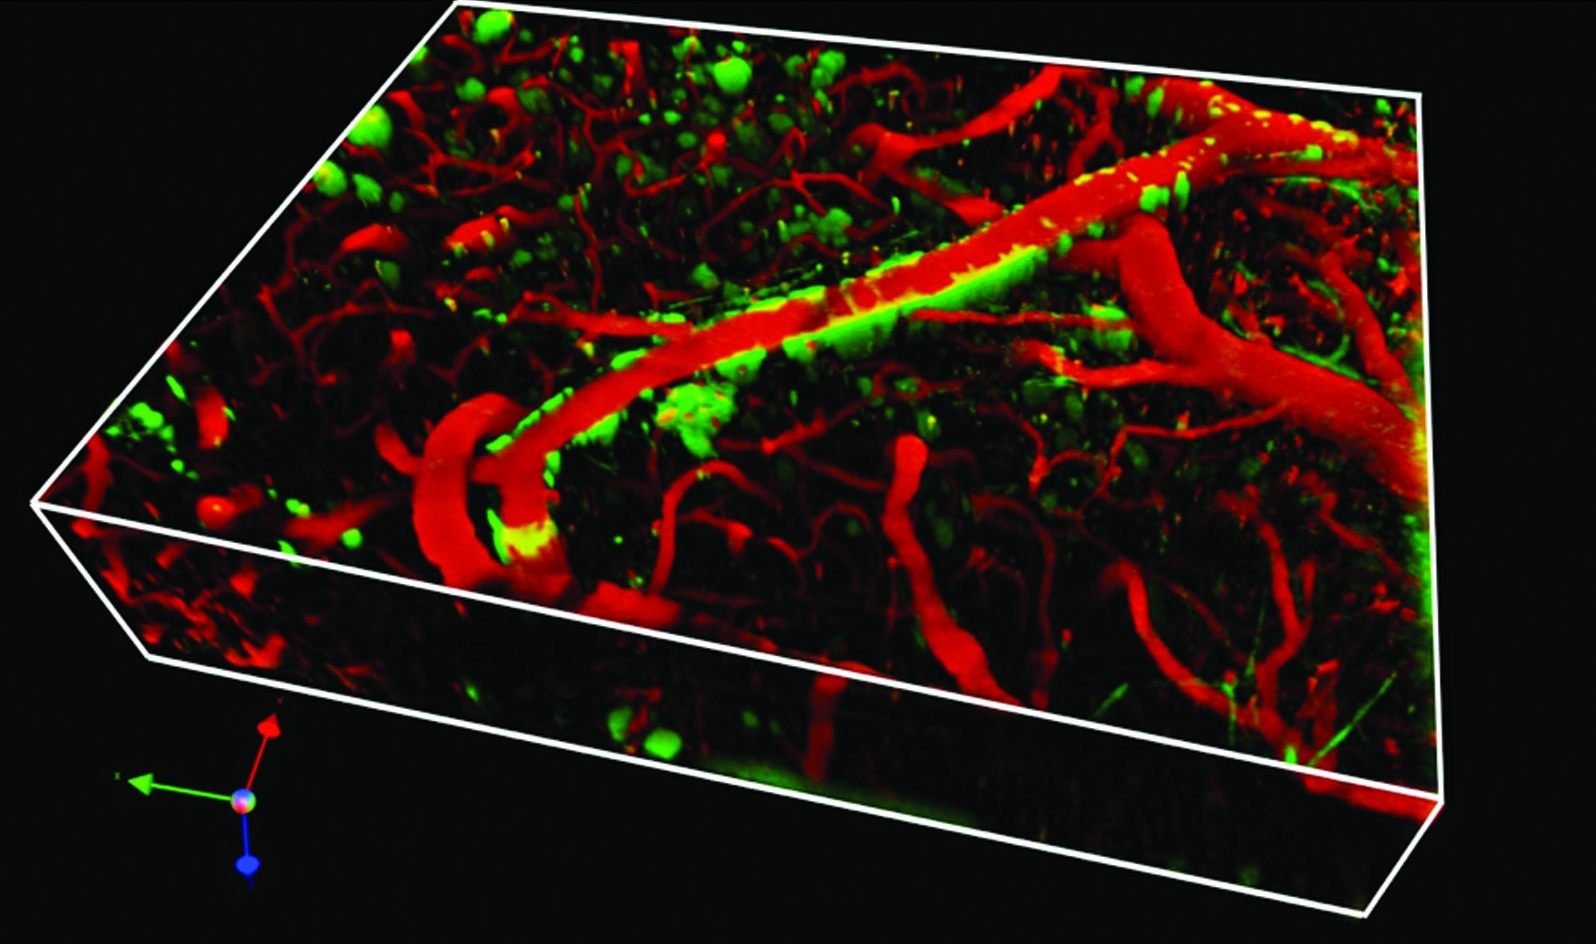 Blood vessels in mouse brain